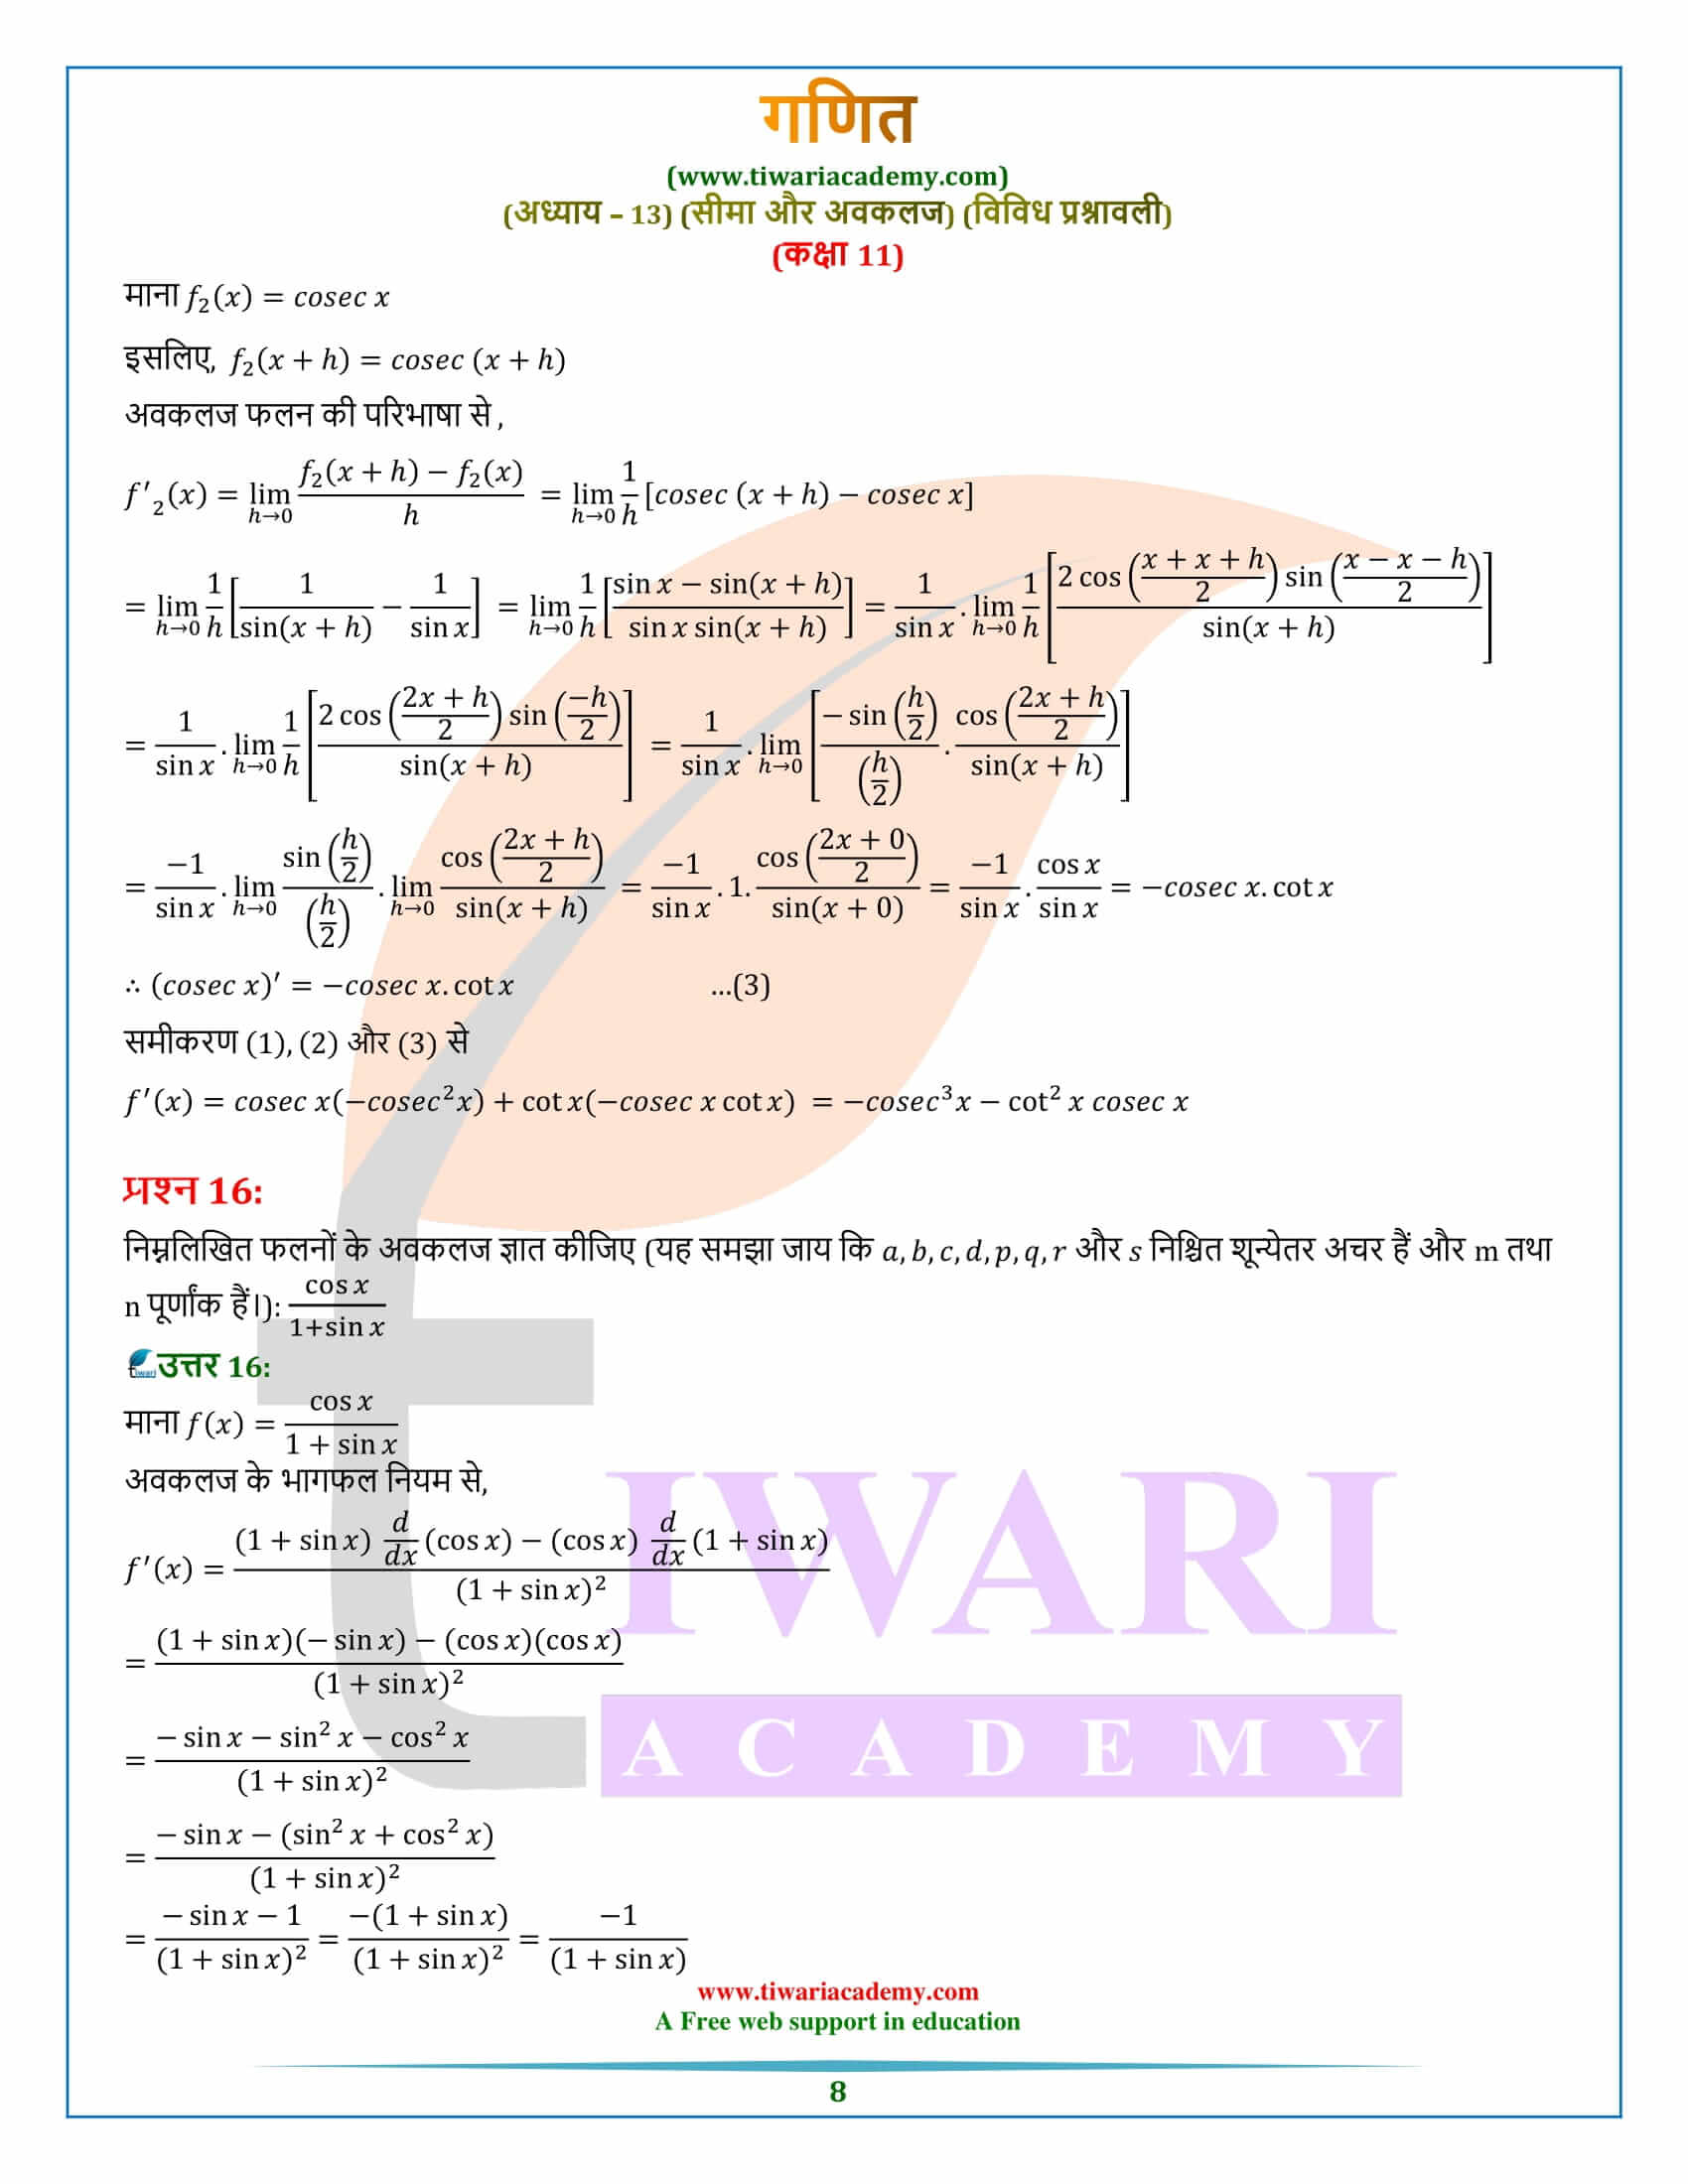 एनसीईआरटी समाधान कक्षा 11 गणित अध्याय 13 विविध प्रश्नावली हिंदी में डाउनलोड